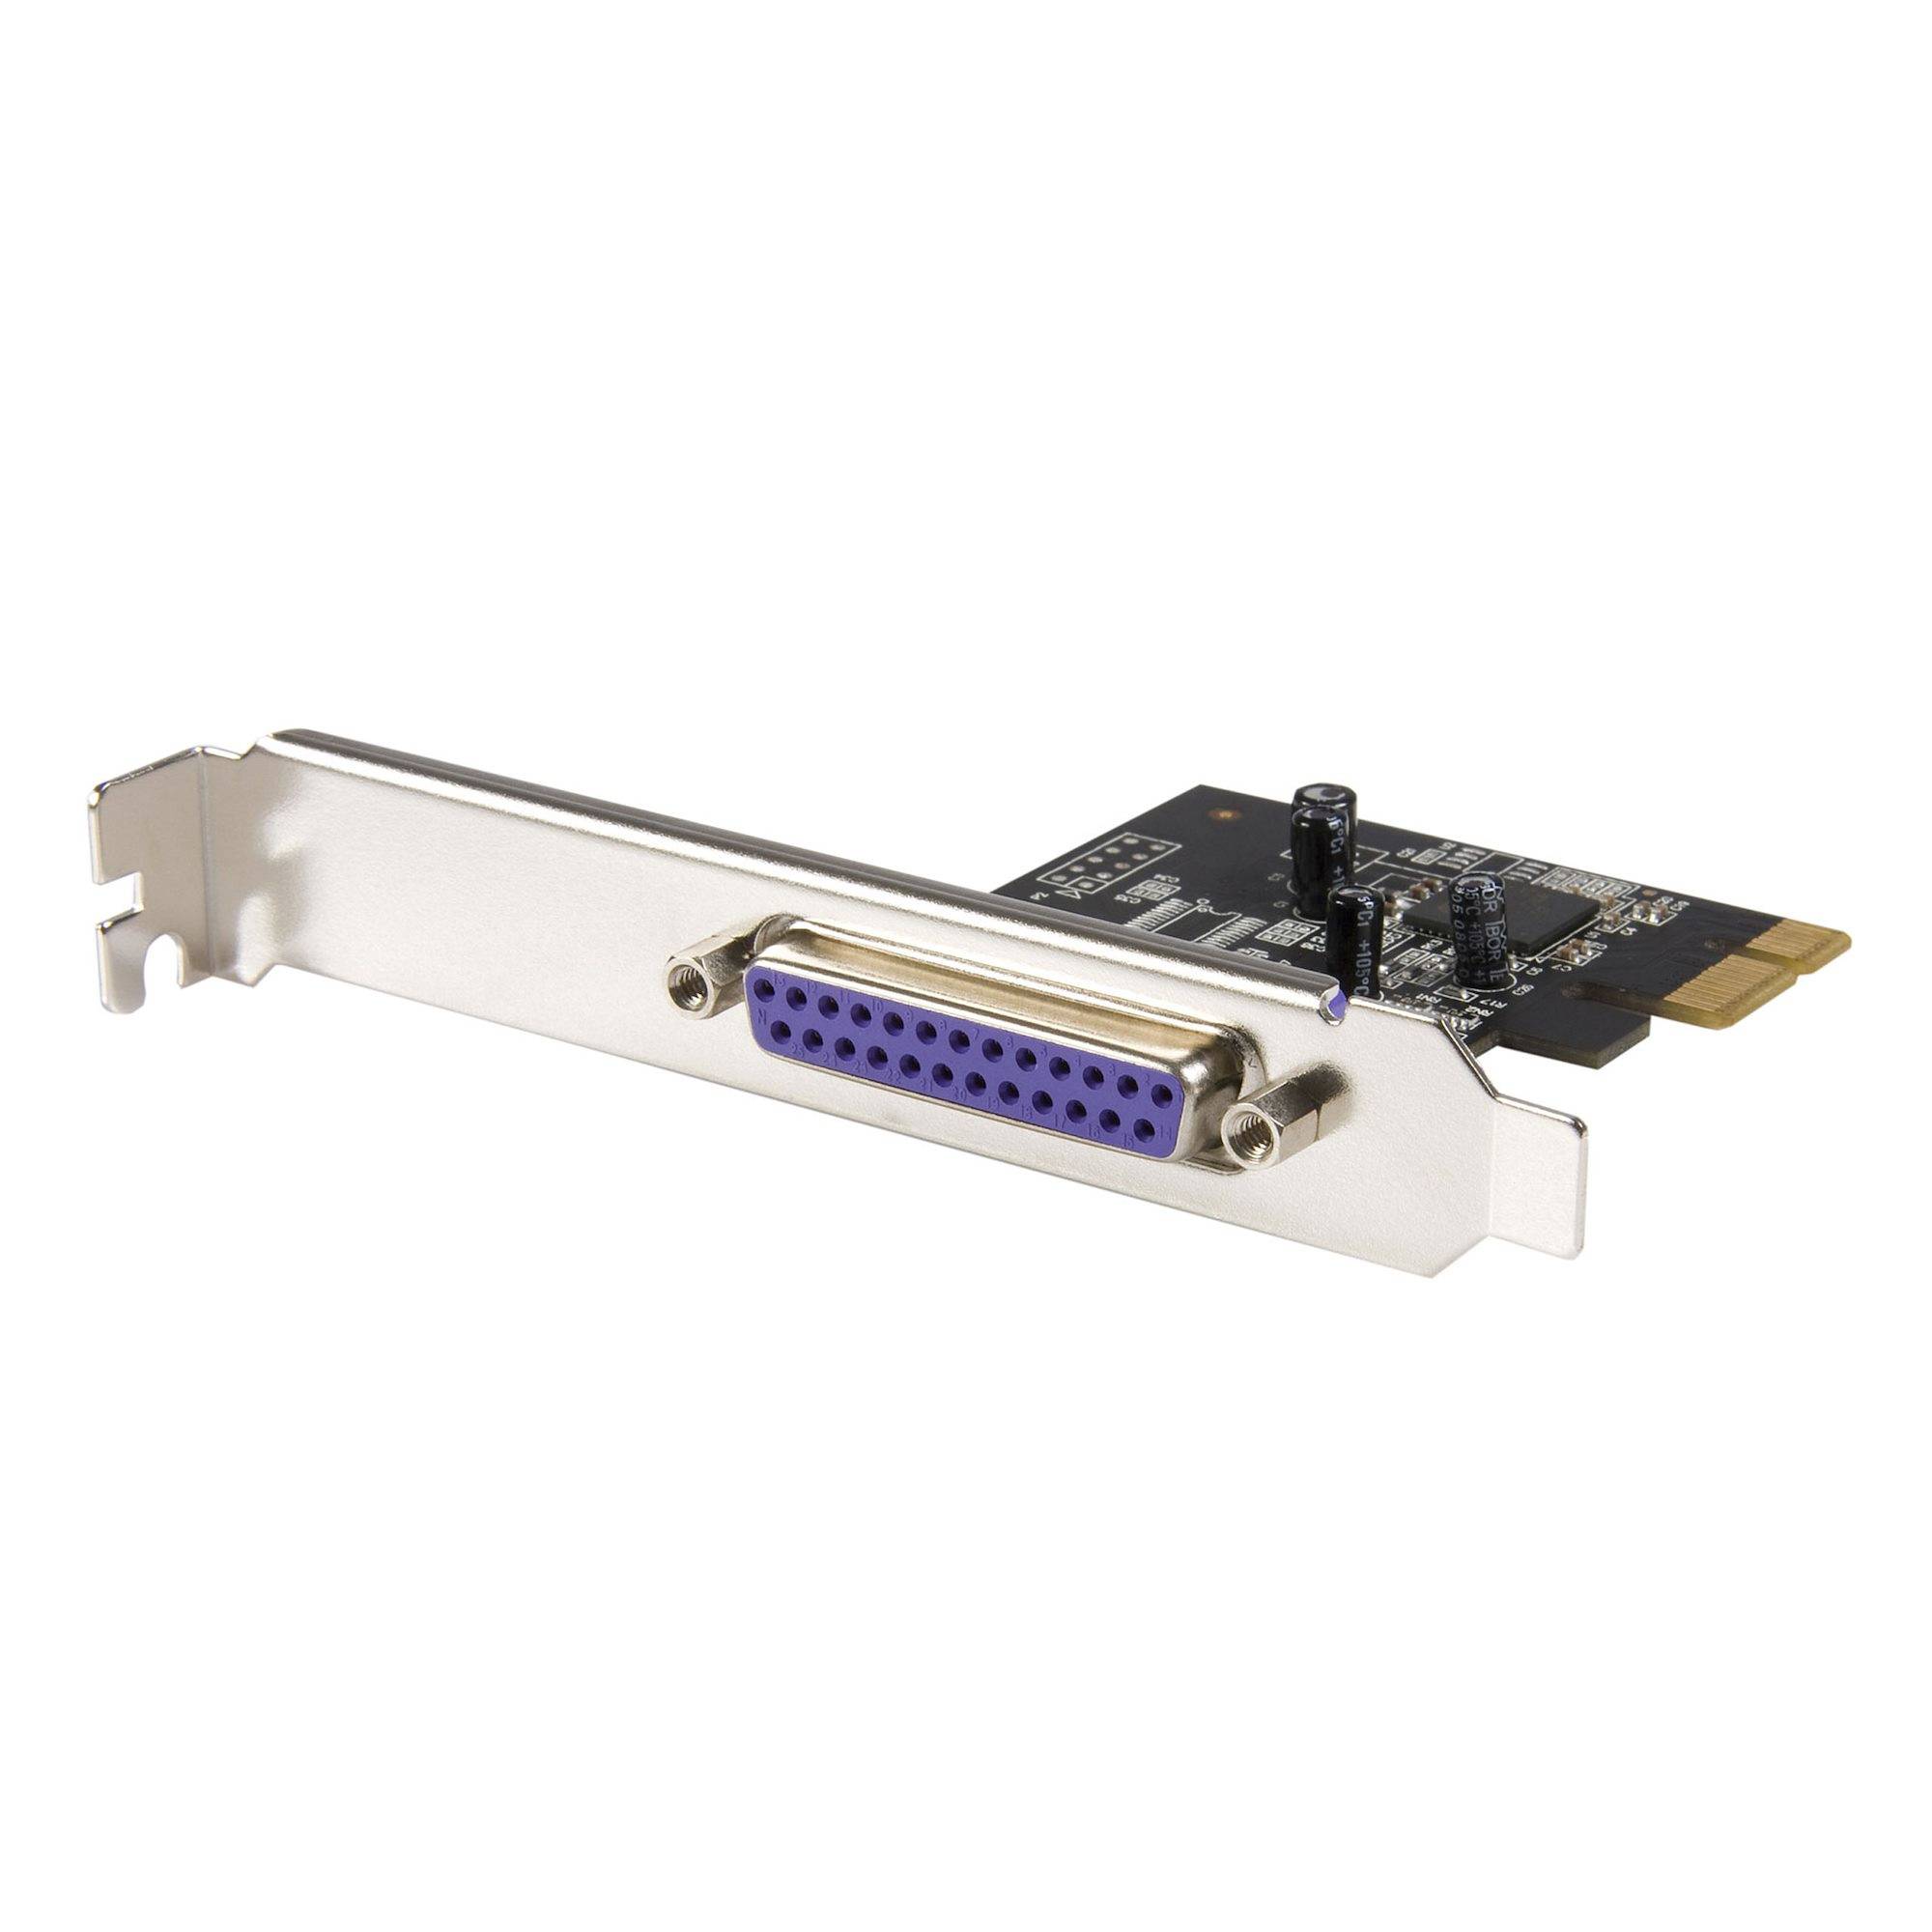 Rca Informatique - Image du produit : 1-PORT PARALLEL PCIE CARD - PCI EXPRESS TO PARALLEL DB25 LPT CAR